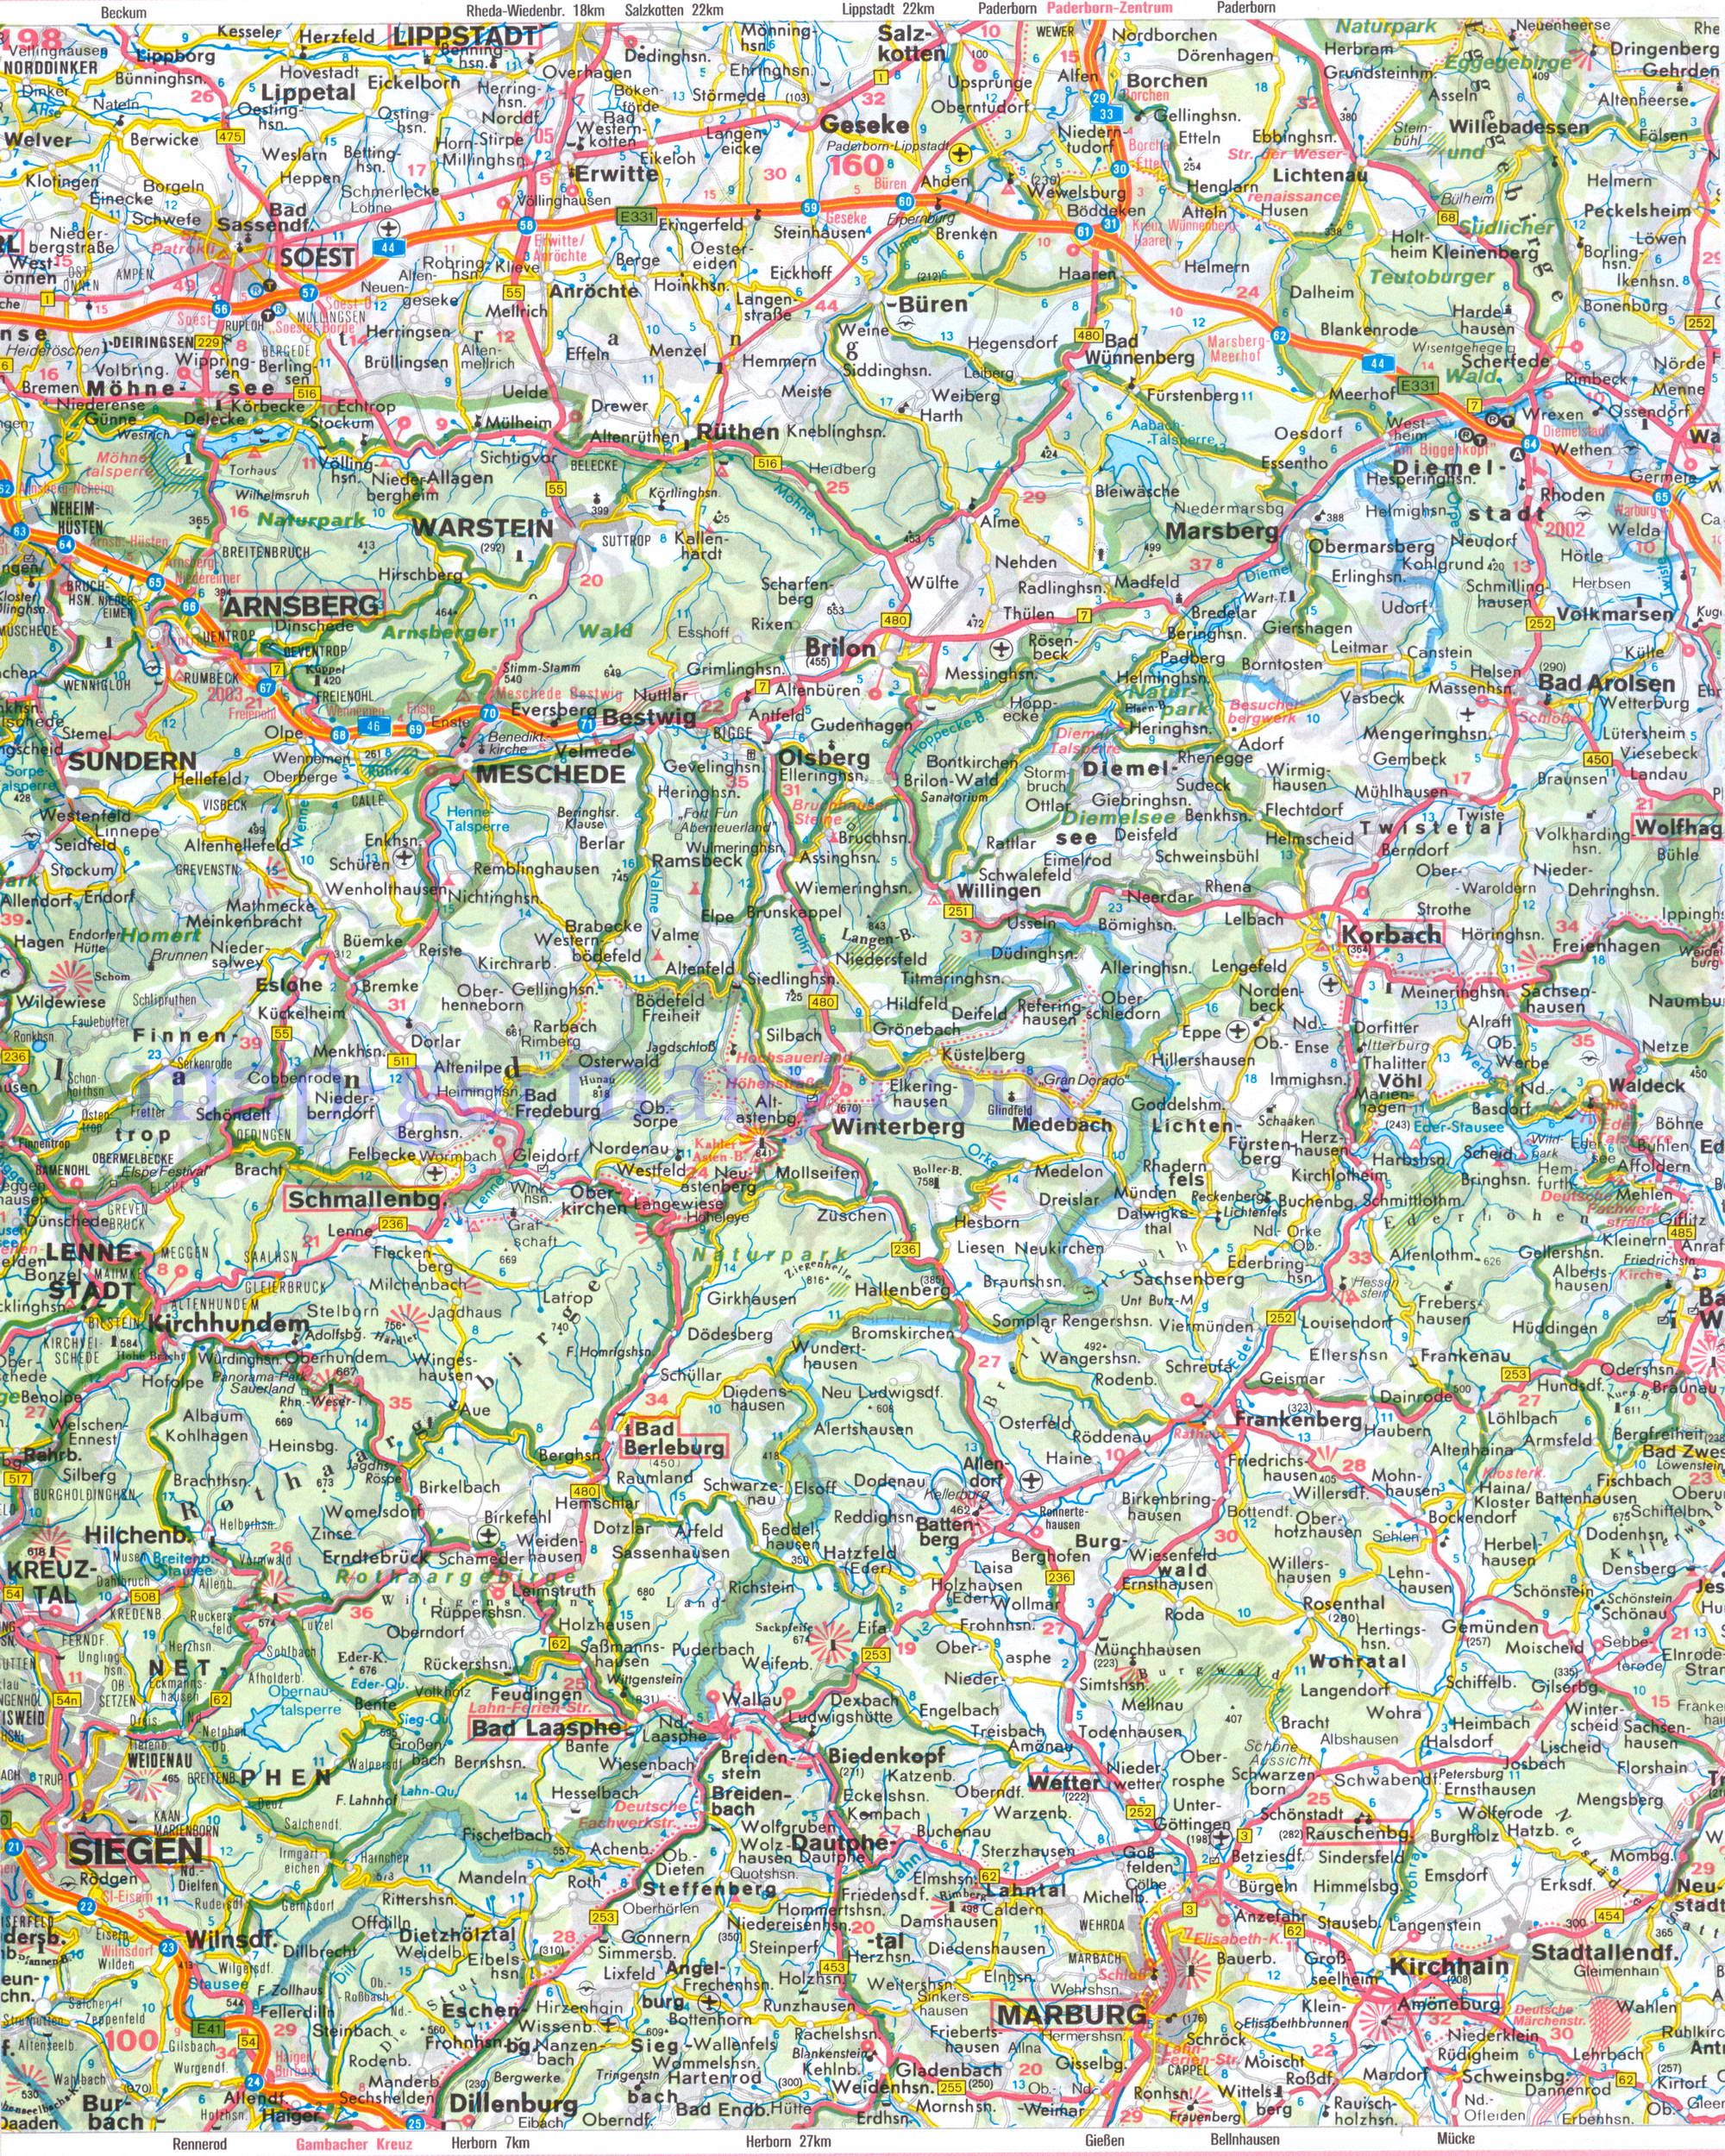  Автомобильная карта земли Северный Рейн - Вестфалия. Подробная карта земли Северный Рейн-Вестфалия, C1 - 